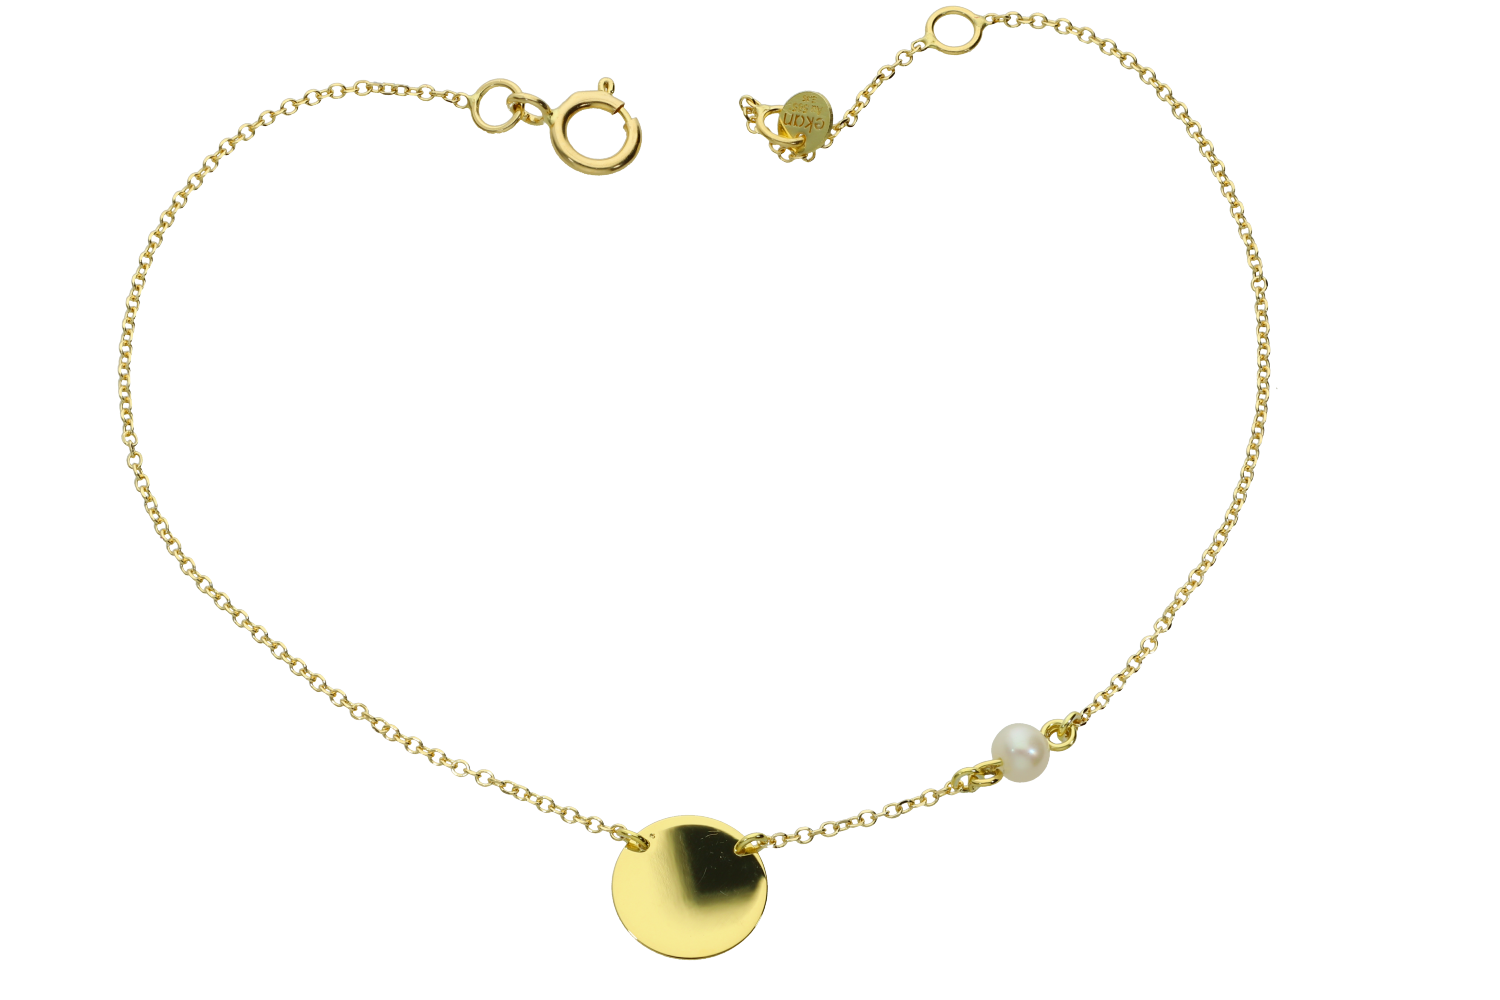 Βραχιόλι σε χρυσό 14Κ με μια στρογγυλή γυαλιστερή πλάκα και ένα μαργαριτάρι